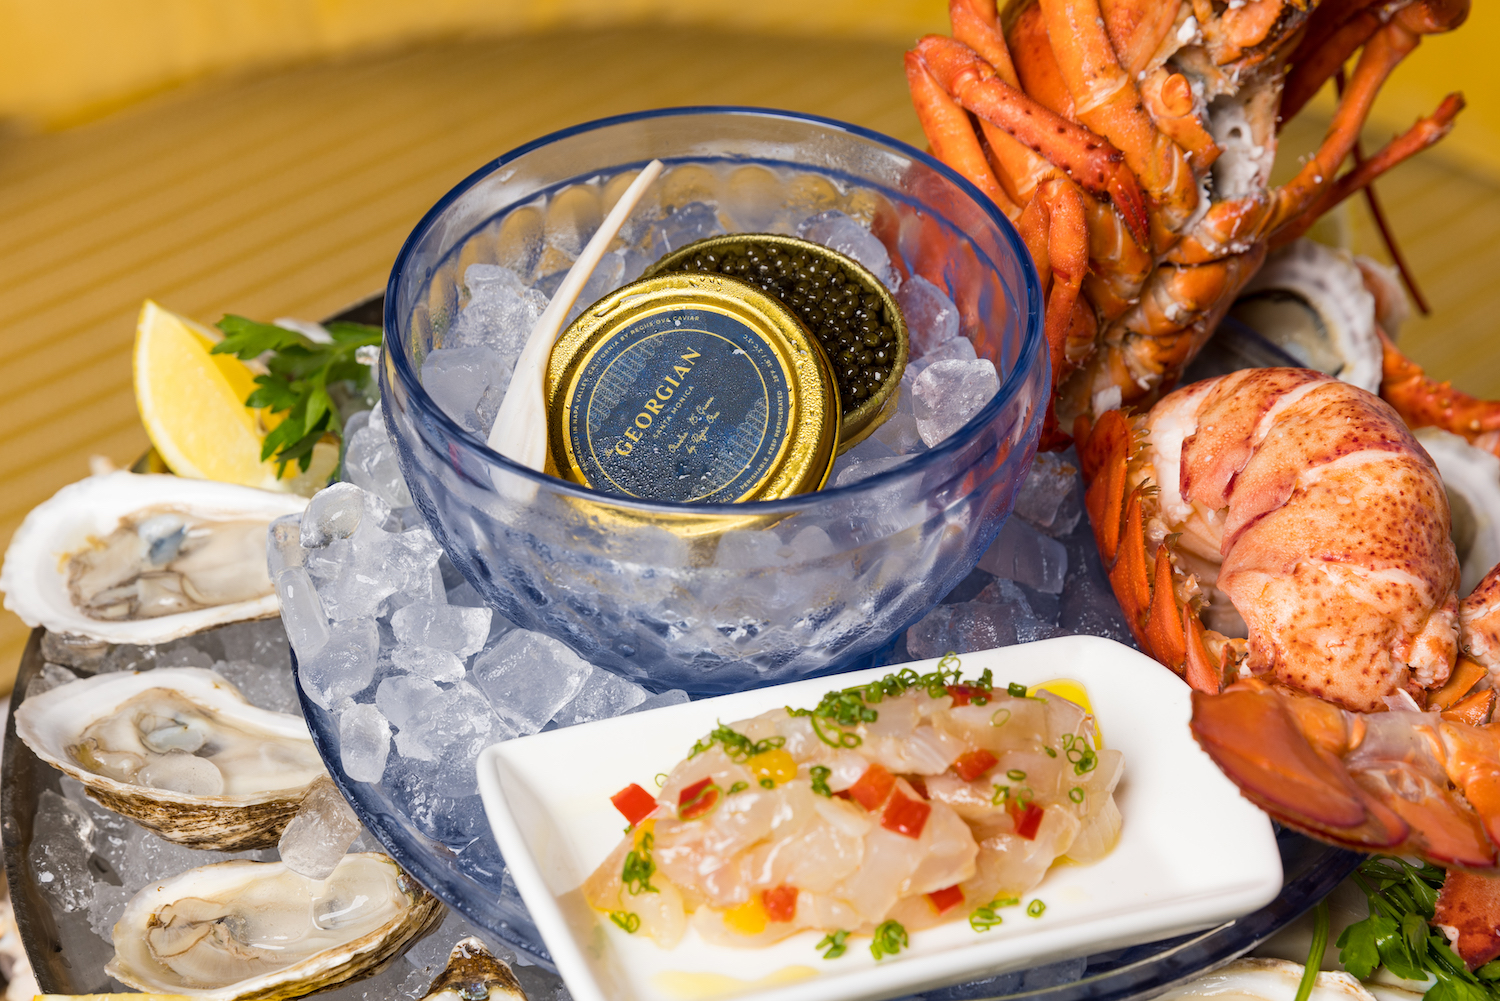 Caviar at the center of a raw bar polatter featuring various seafoods